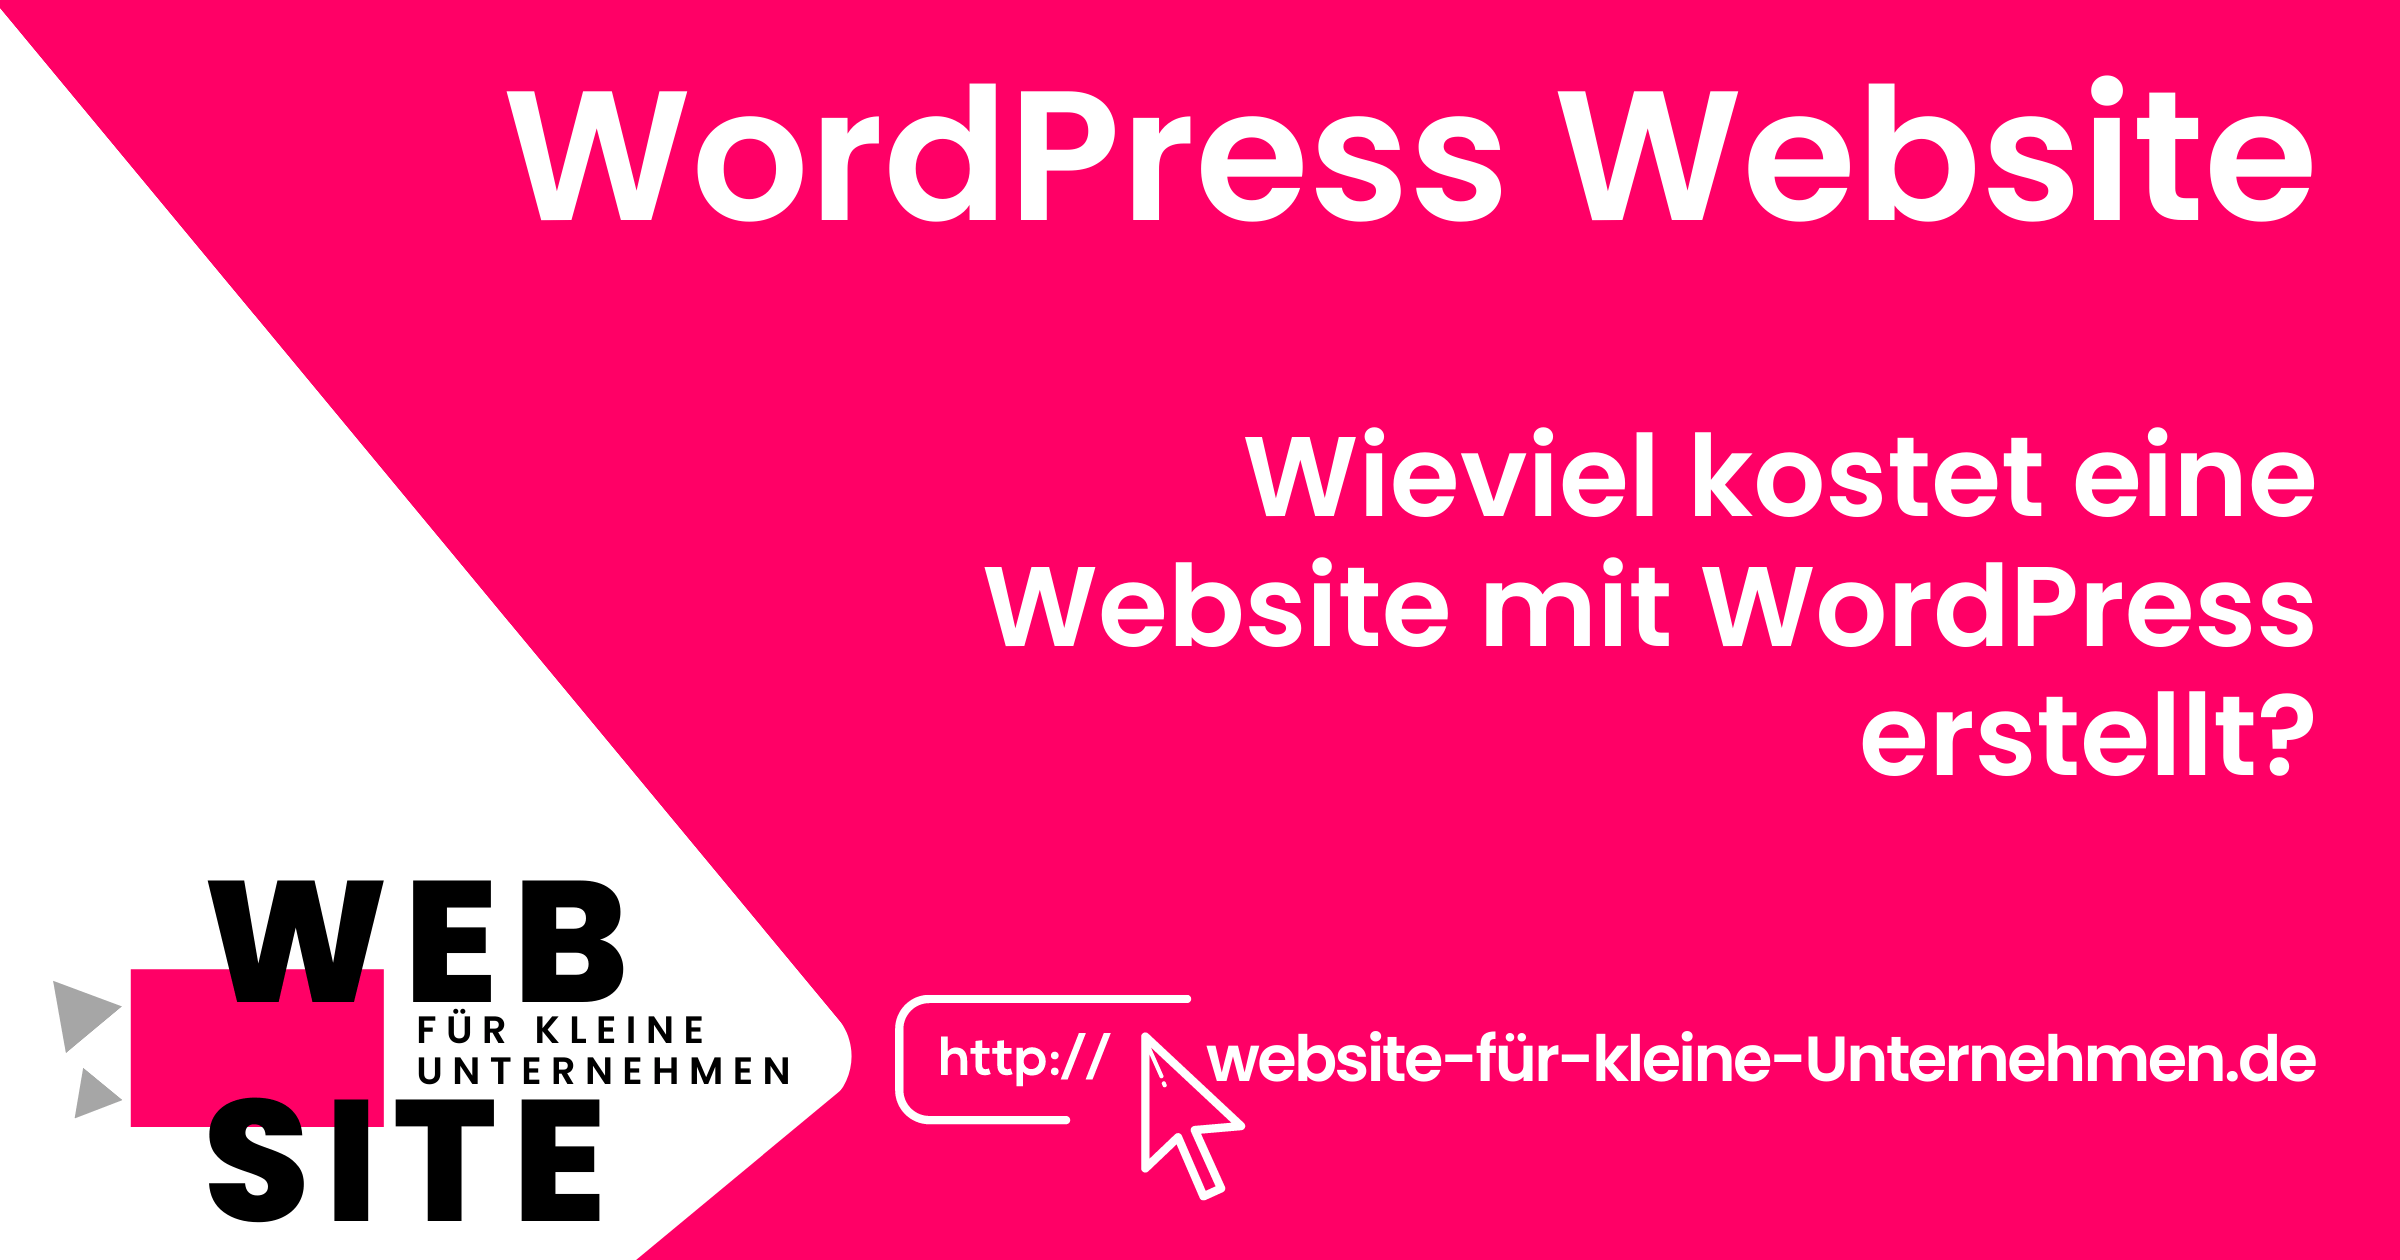 website-für-kleine-unternehmen - Website Erstellen lassen Preise - WordPress